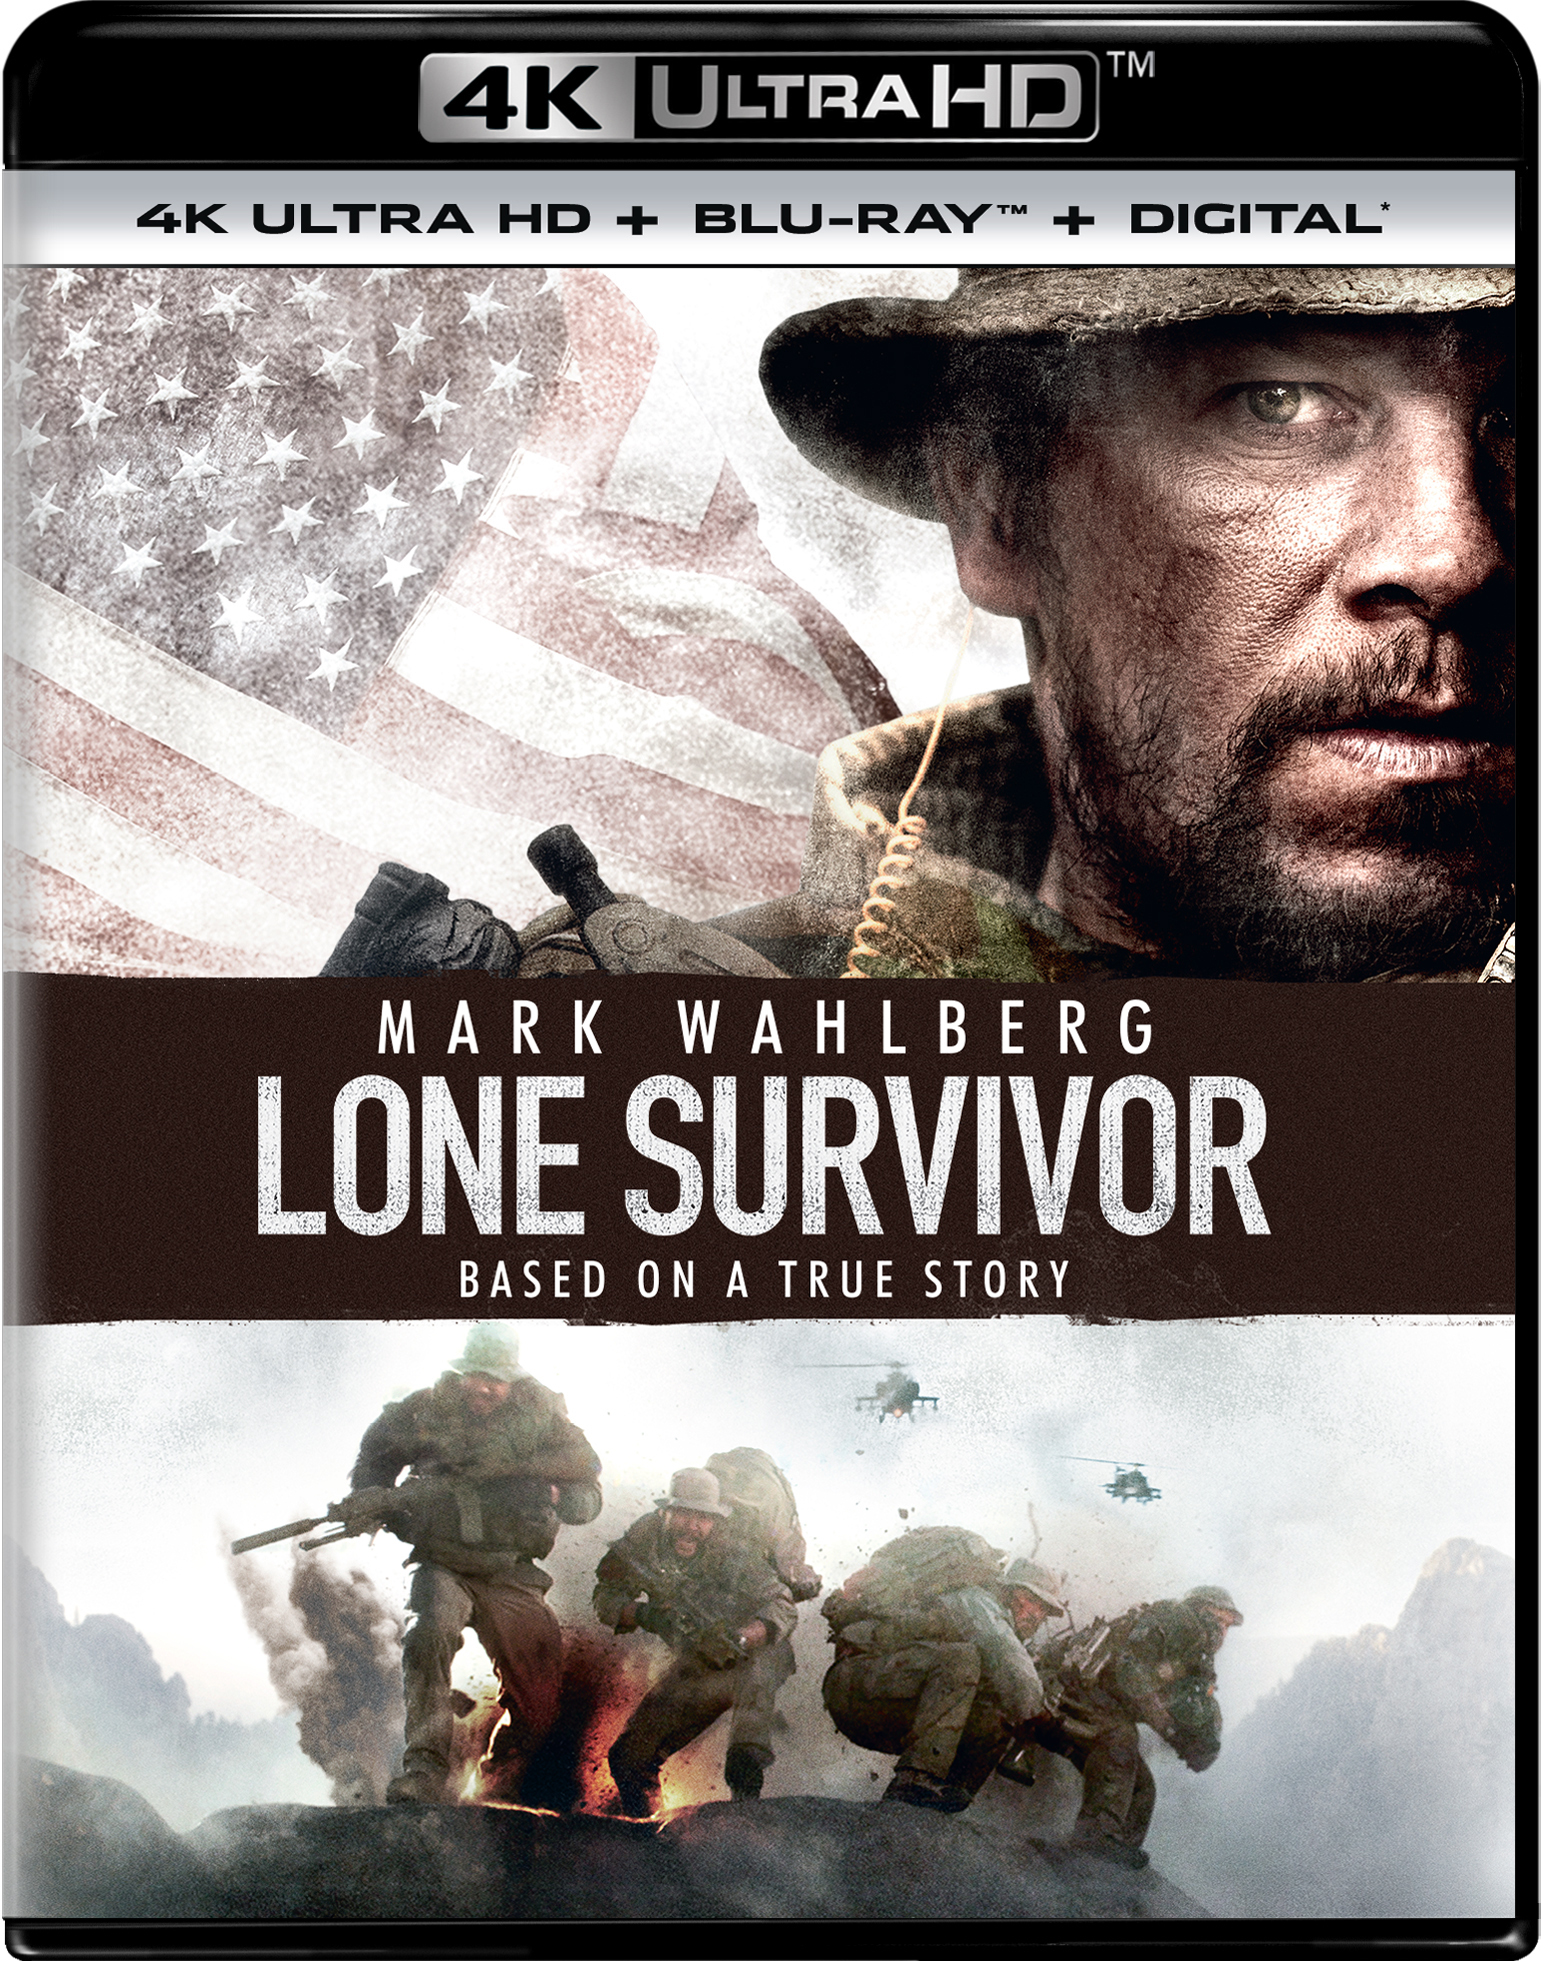 Lone Survivor TV SPOT 1 (2013) - Taylor Kitsch, Emile Hirsch Movie HD 